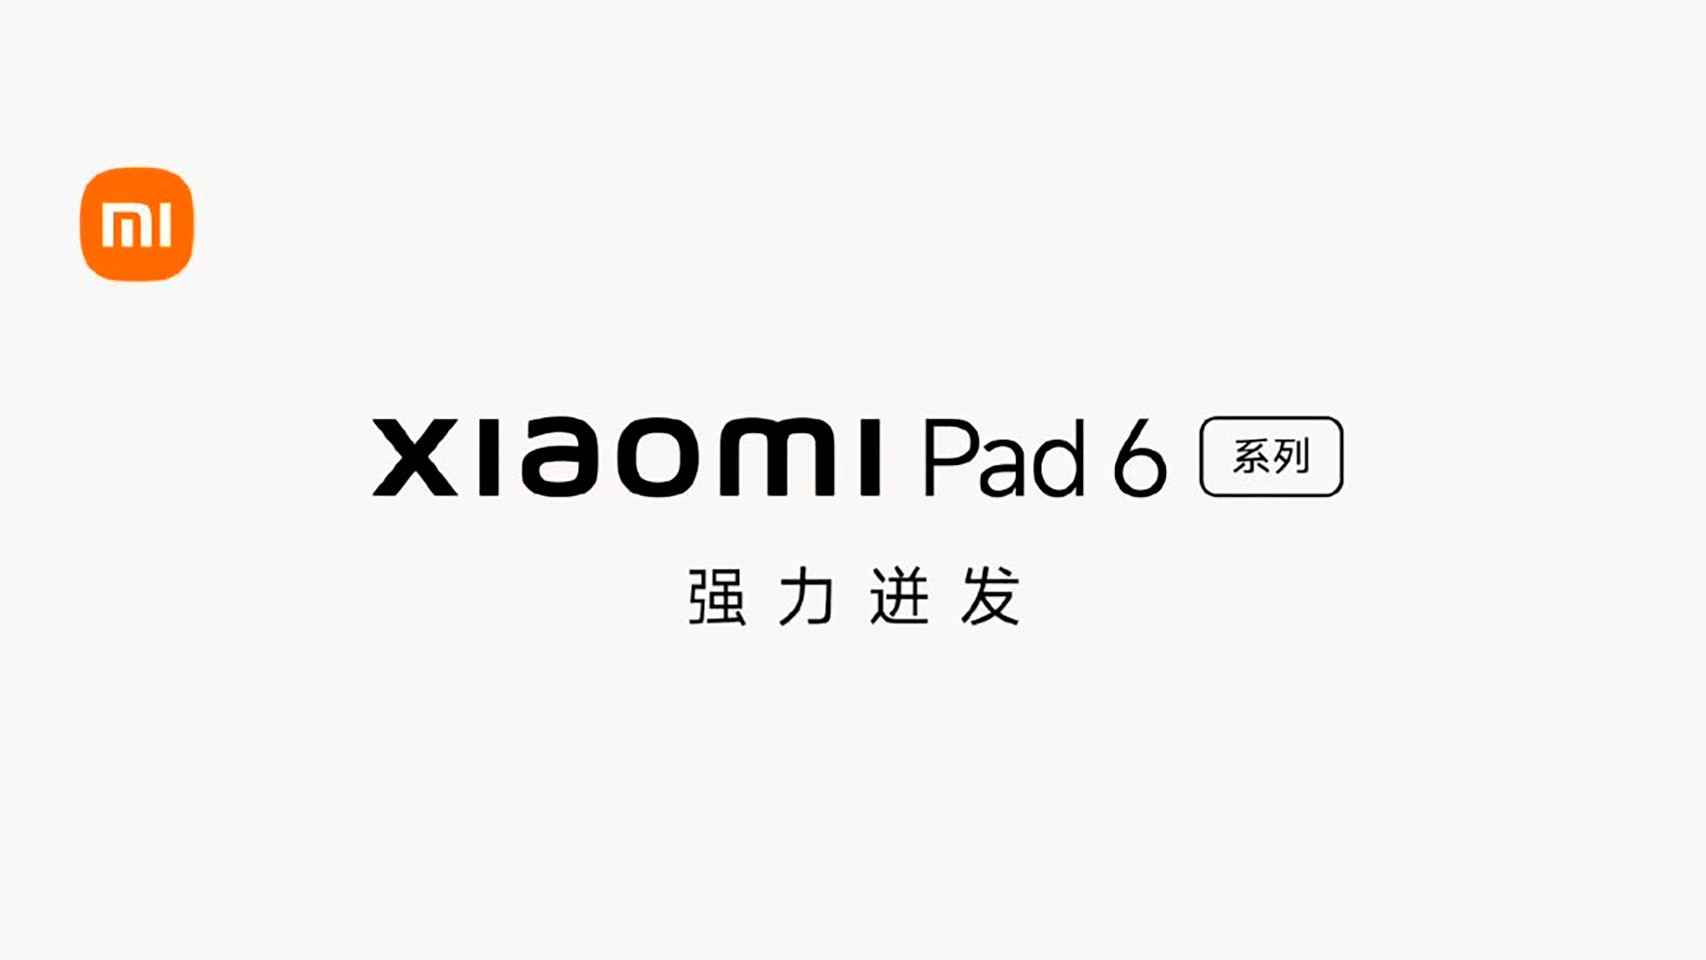 La Xiaomi Pad 6 es una tablet dispuesta en su totalidad para la productividad